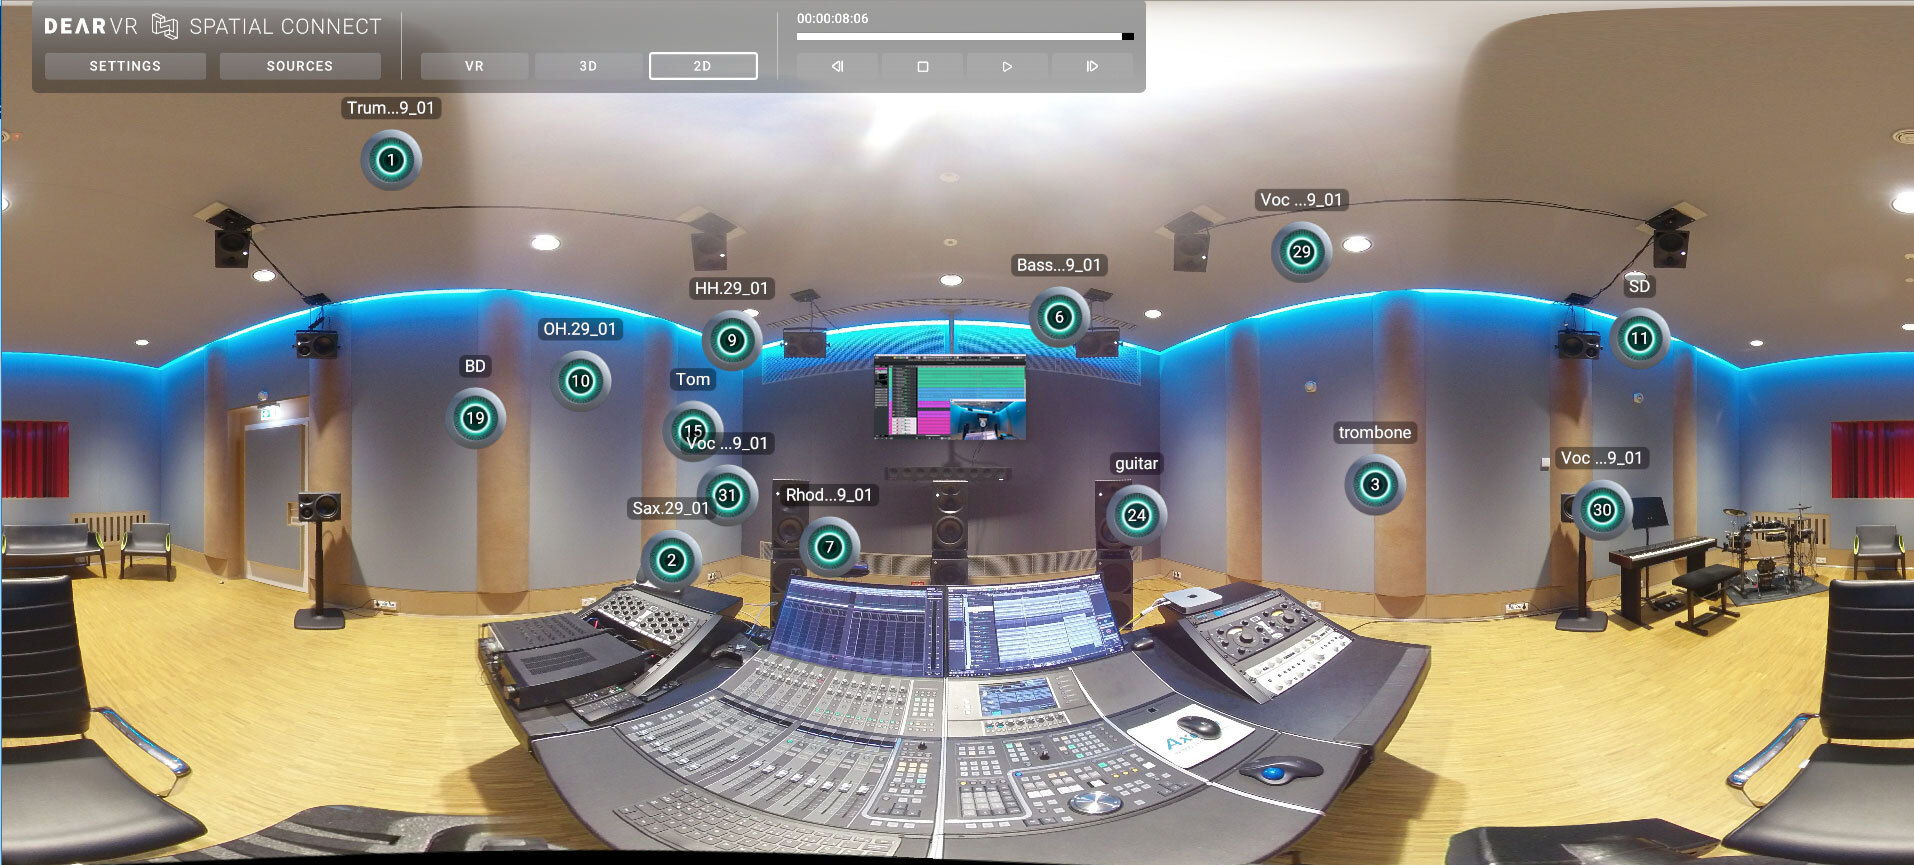 dearVR SPATIAL CONNECT bietet einen vollumfänglichen 3D-Überblick einer Audiosession durch die Simulation der Tonplatzierung in einem VR-Umfeld